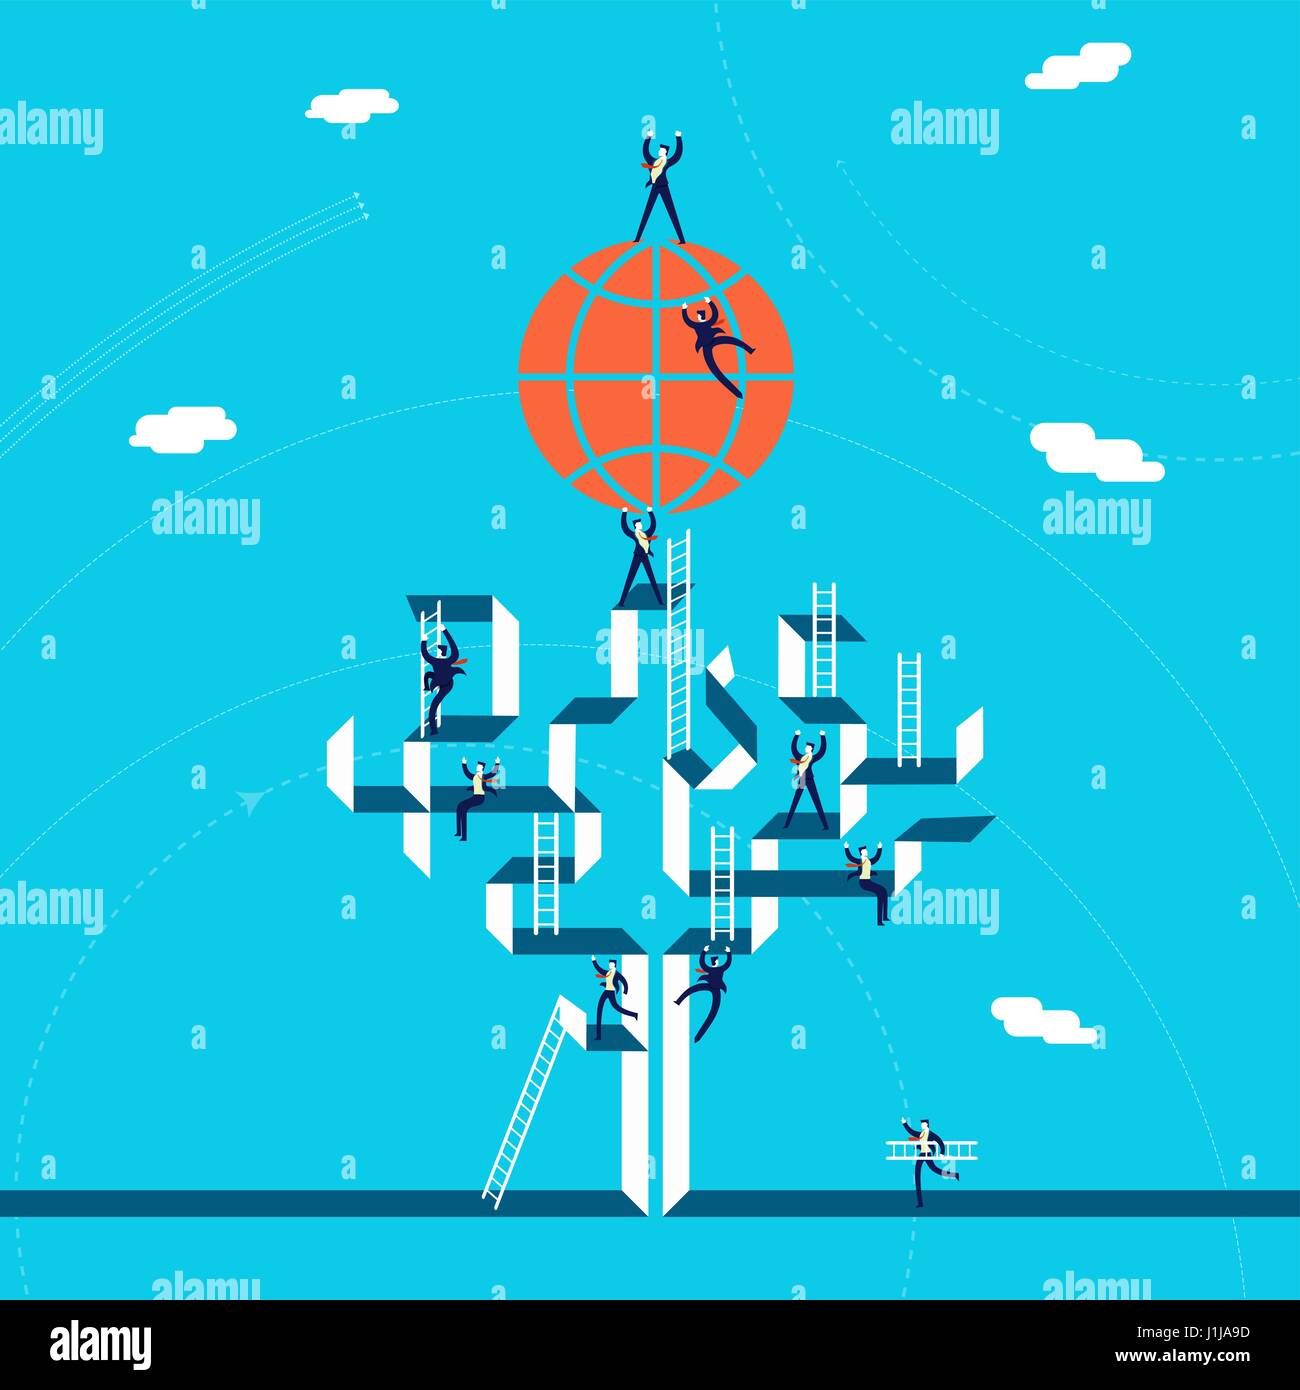 International business concept illustration, hommes d'escalade l'équipe réseau d'arbre d'une réussite mondiale. Vecteur EPS10. Illustration de Vecteur